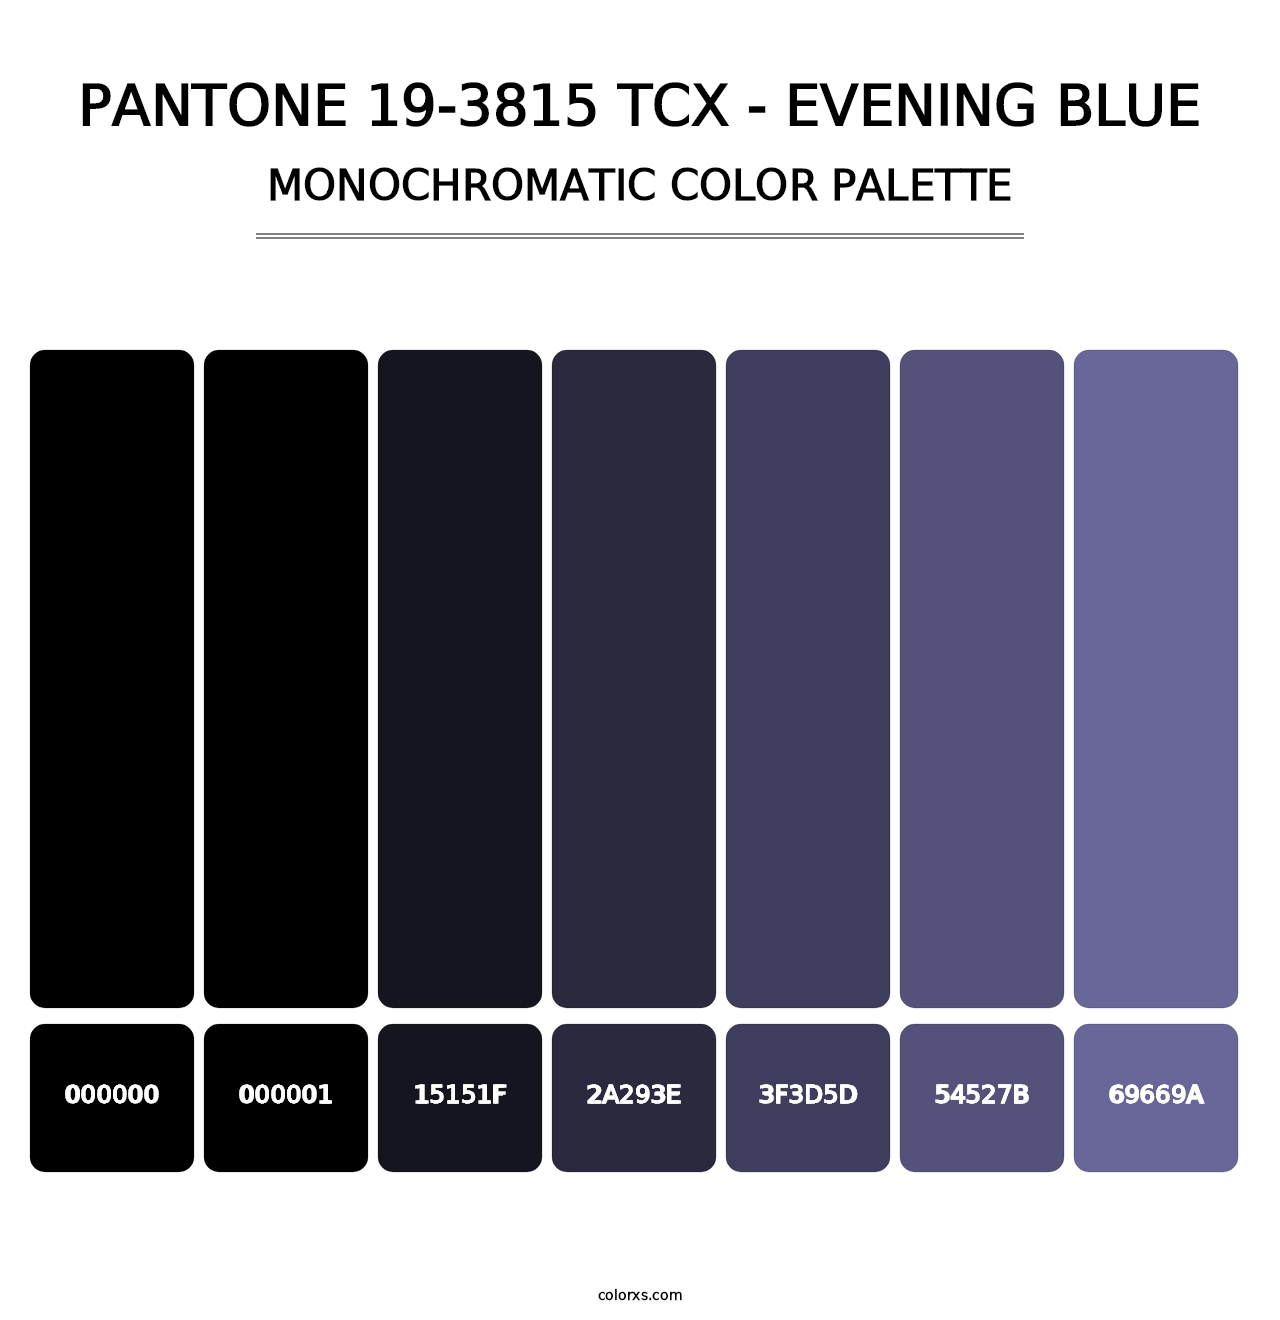 PANTONE 19-3815 TCX - Evening Blue - Monochromatic Color Palette